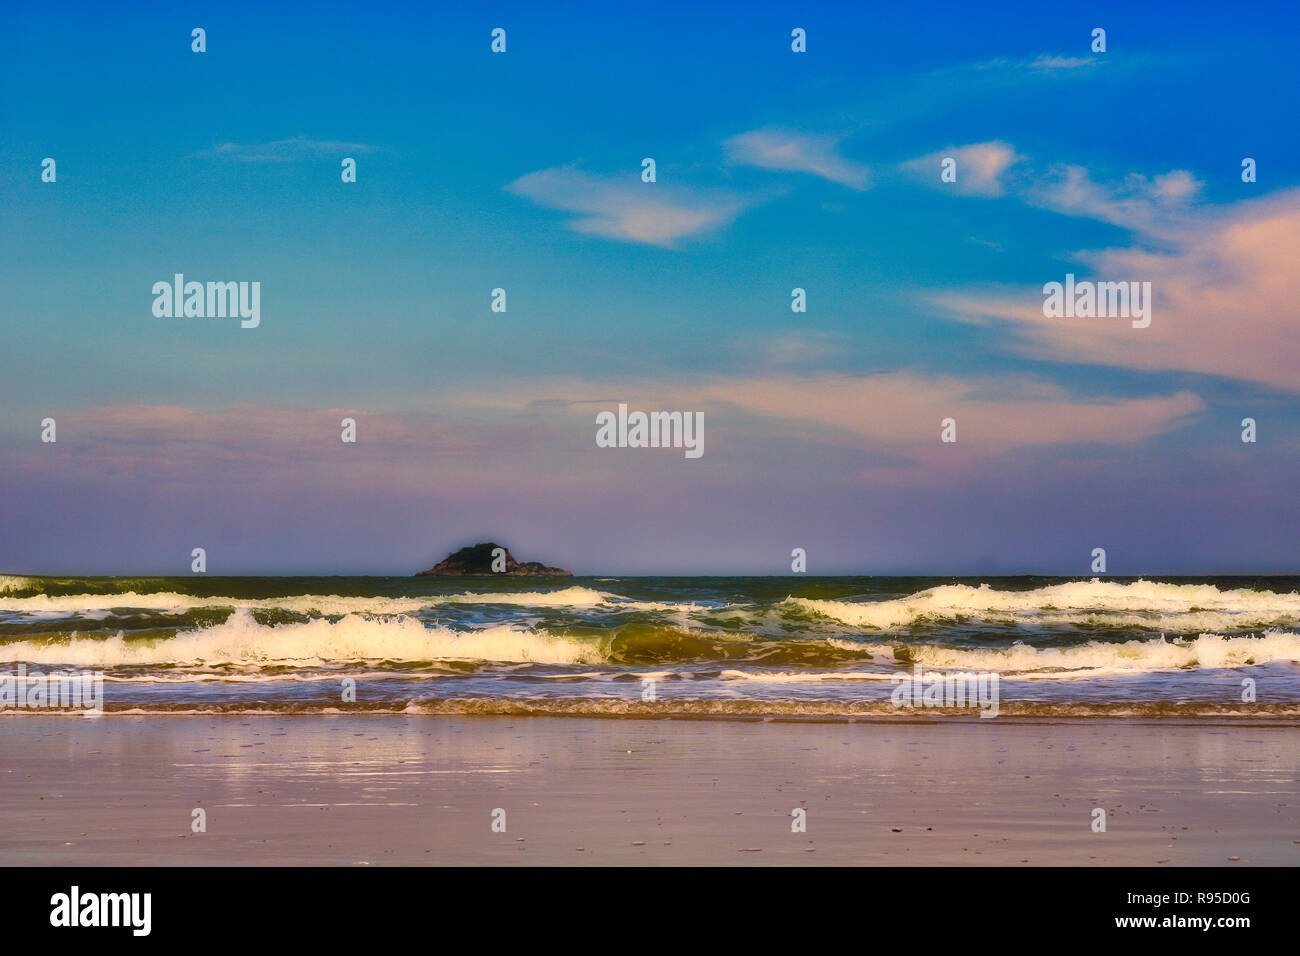 Questo bellissimo paesaggio mostra il mare della Thailandia sulla spiaggia nel crepuscolo della sera Foto Stock